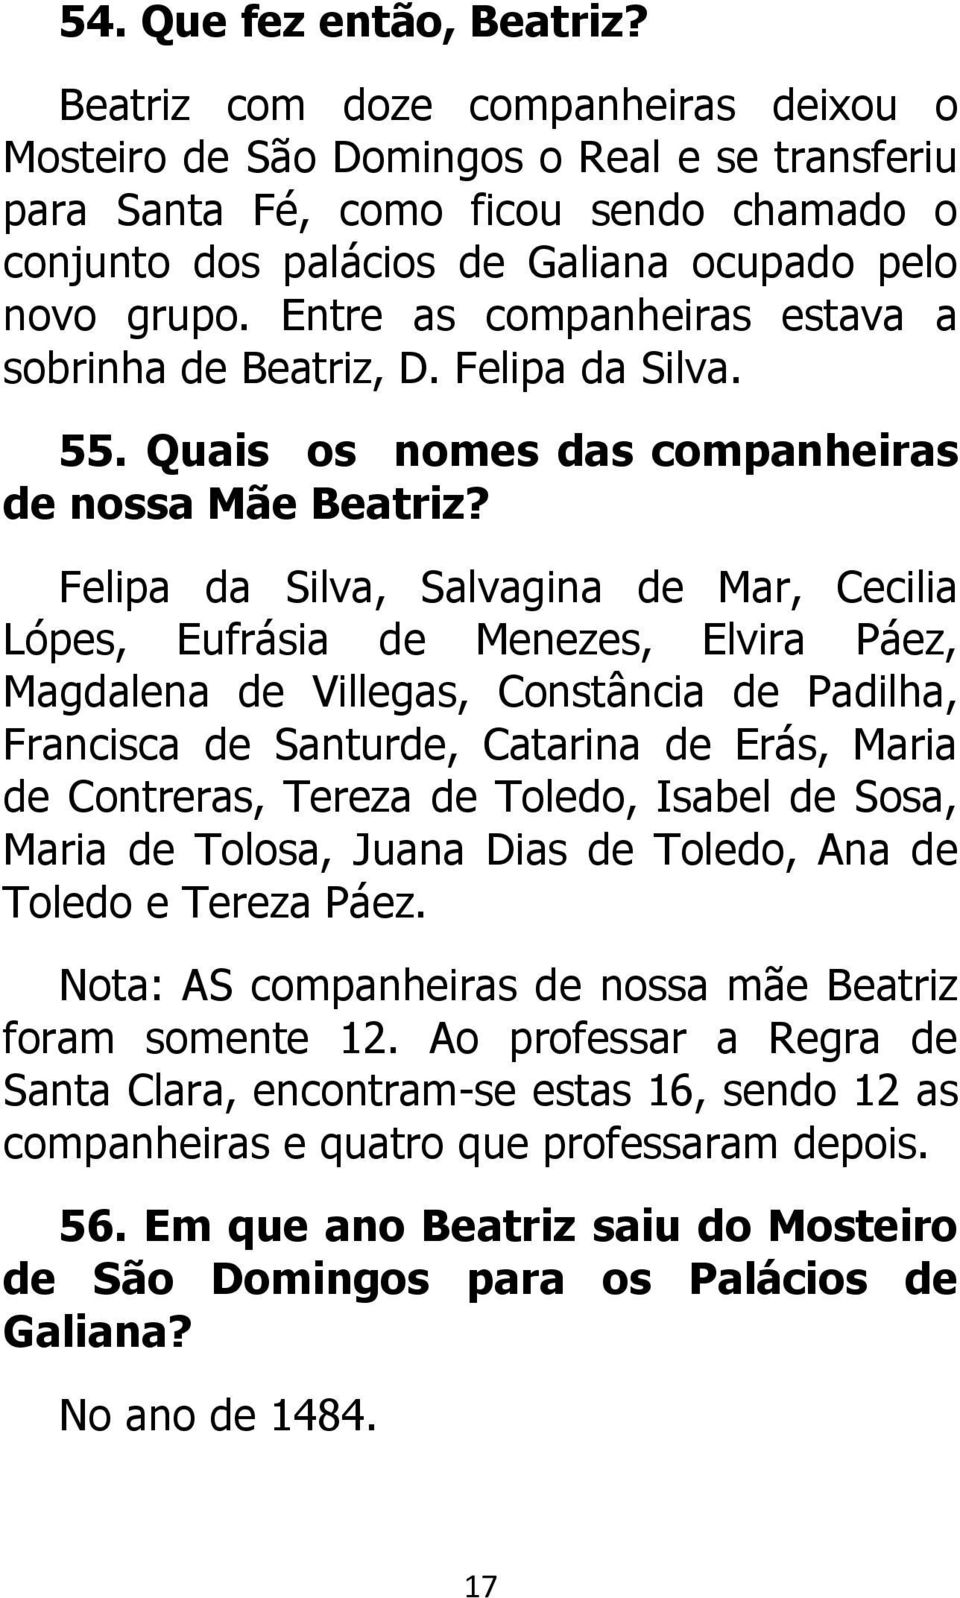 Entre as companheiras estava a sobrinha de Beatriz, D. Felipa da Silva. 55. Quais os nomes das companheiras de nossa Mãe Beatriz?